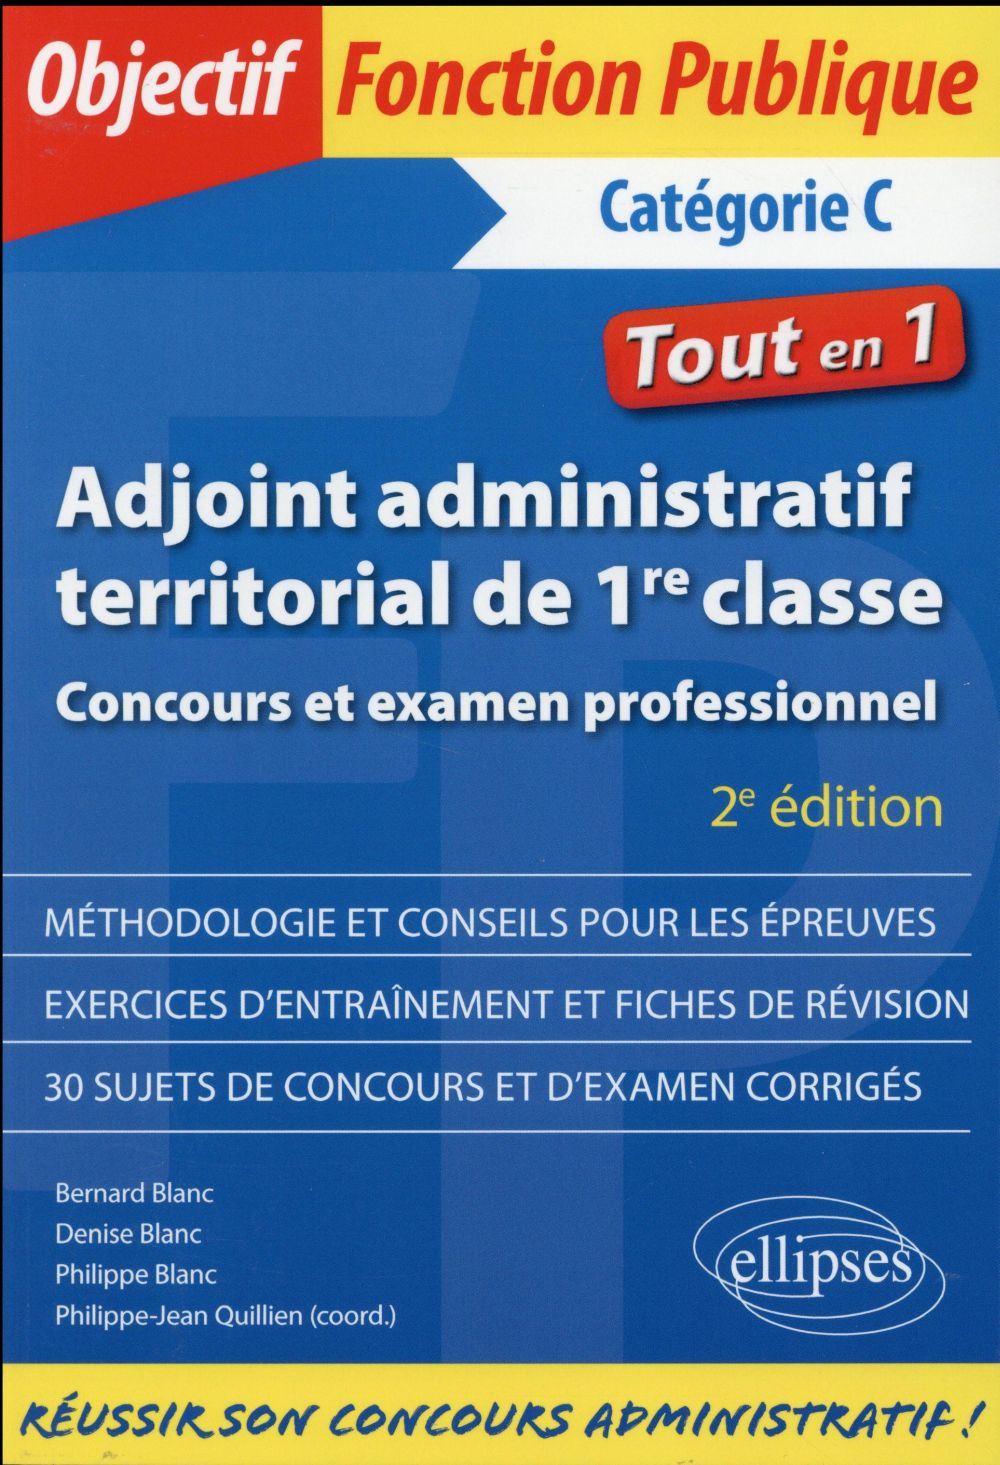 ADJOINT ADMINISTRATIF TERRITORIAL DE 1RE CLASSE - CONCOURS ET EXAMEN PROFESSIONNEL - 2E EDITION